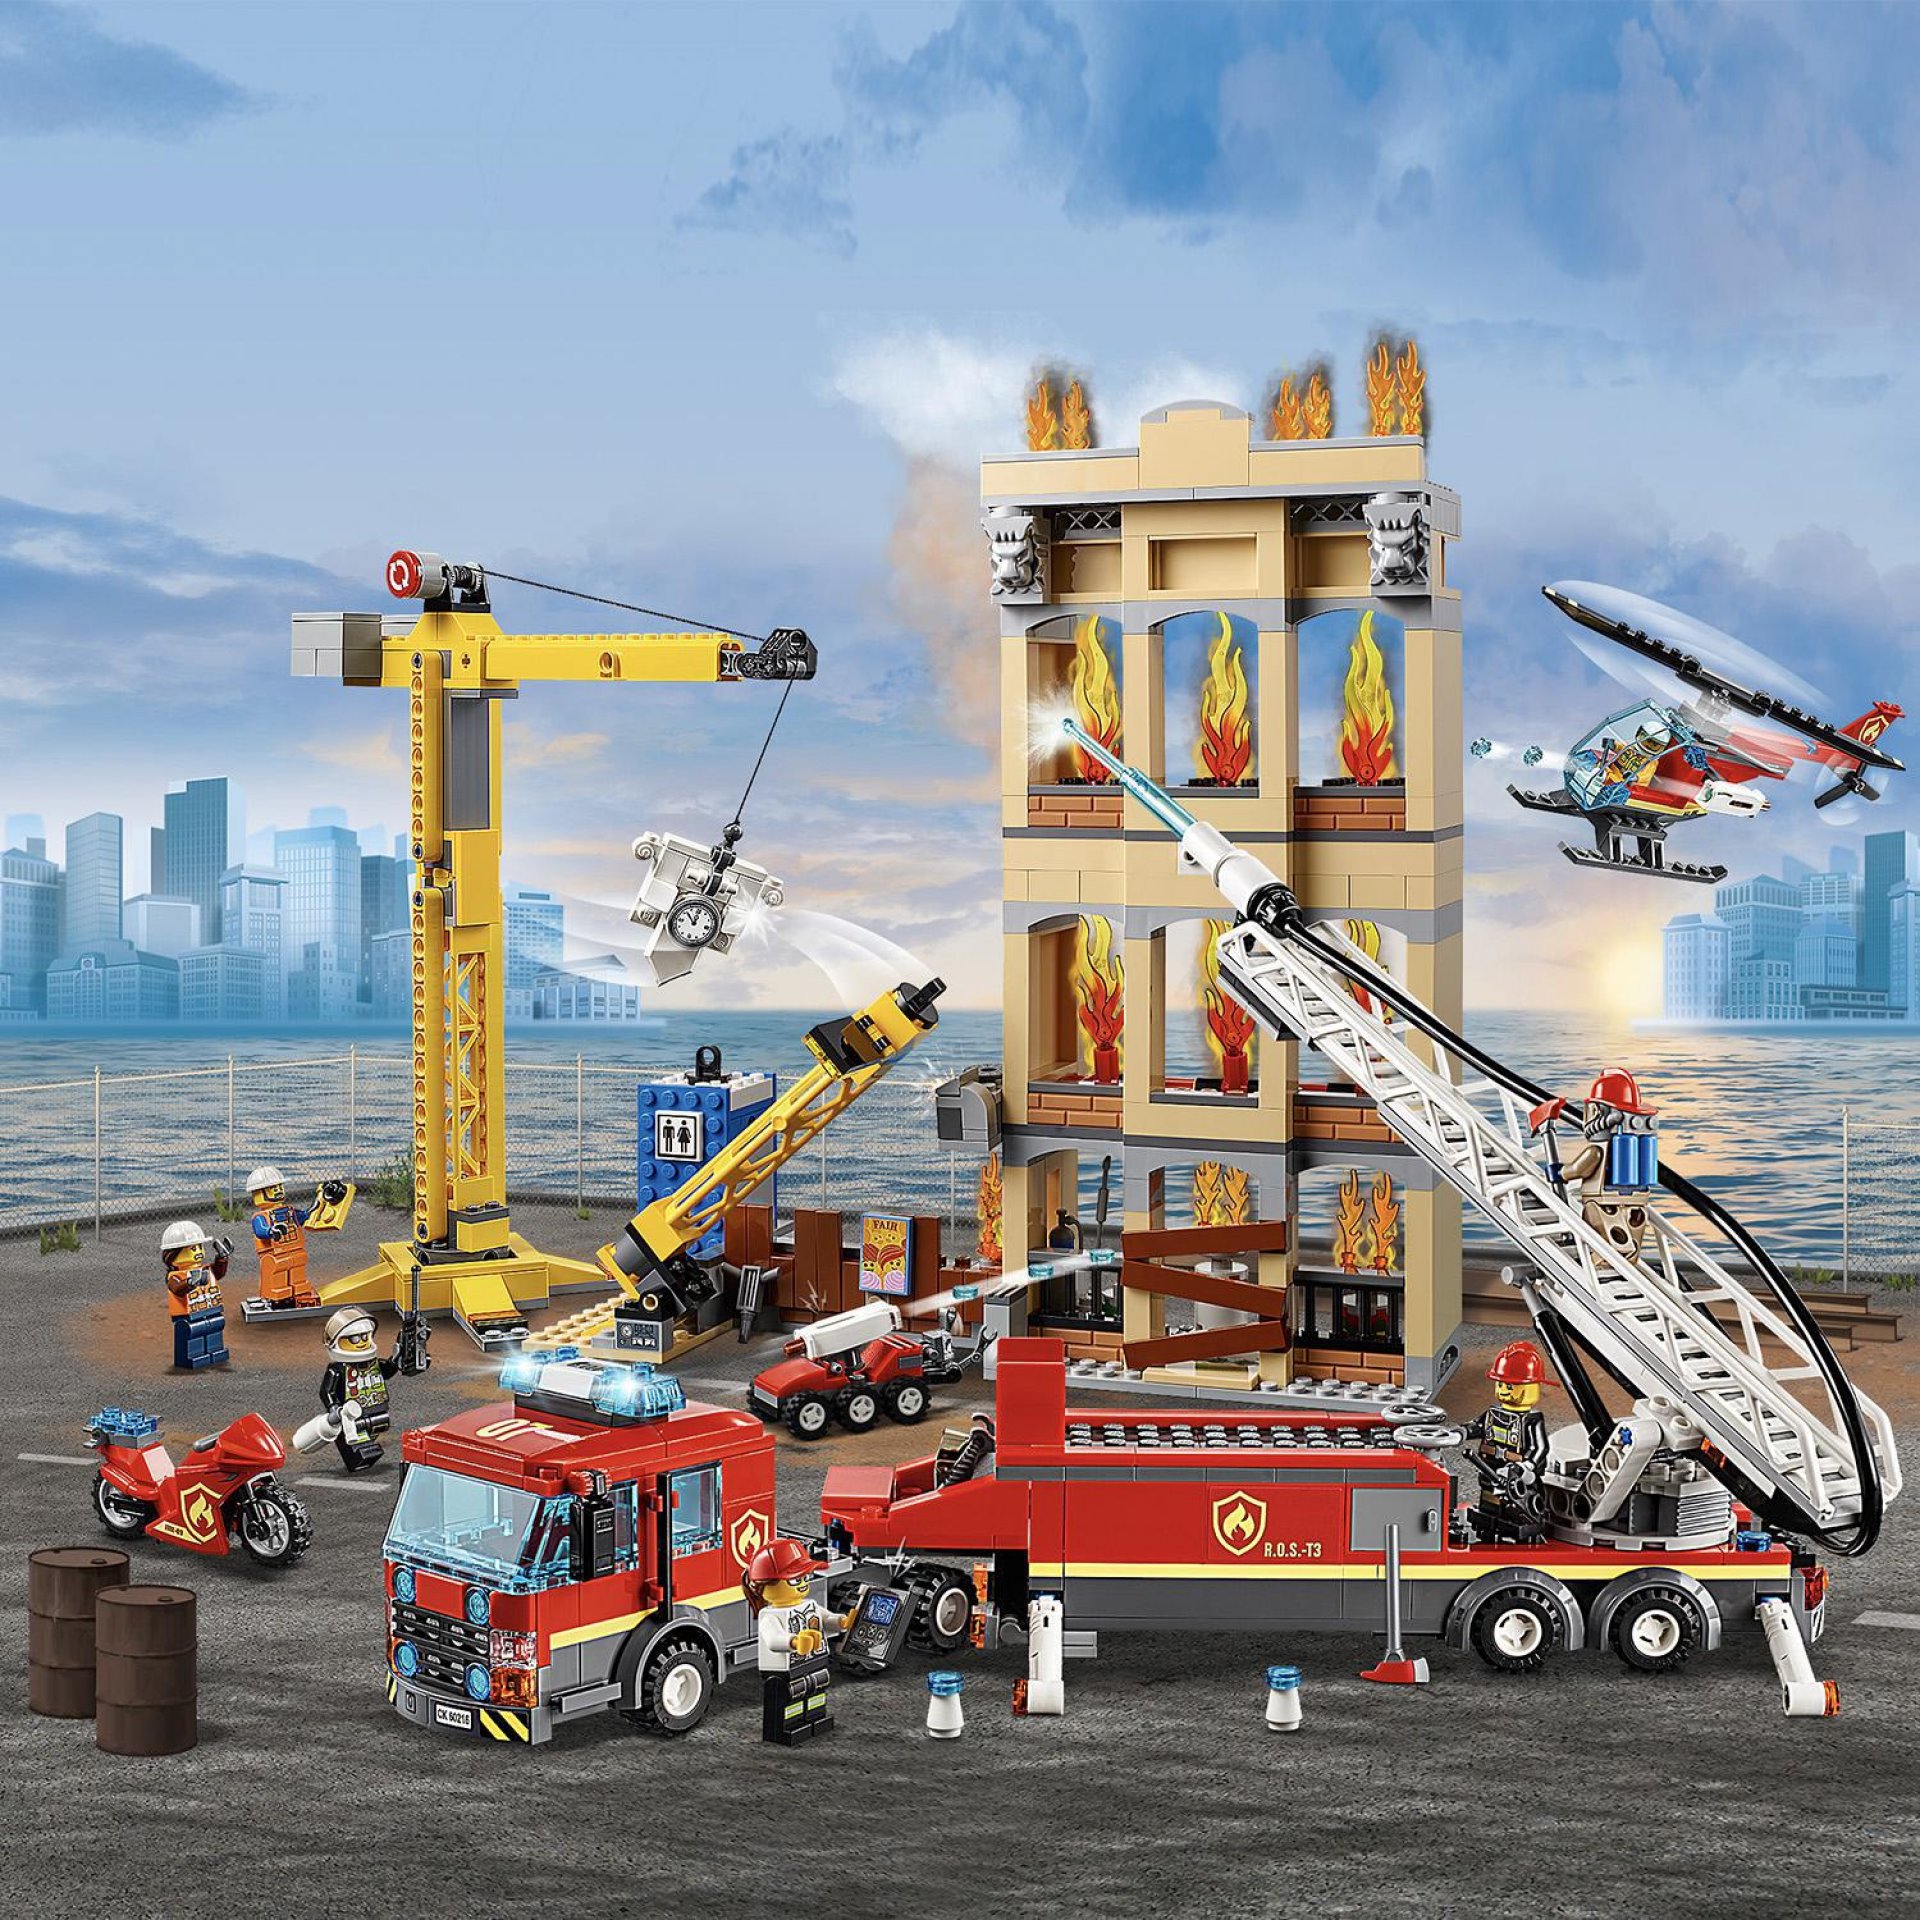 LEGO City Fire Missione Antincendio in Città, Stazione dei Pompieri con Camion G 60216, , large